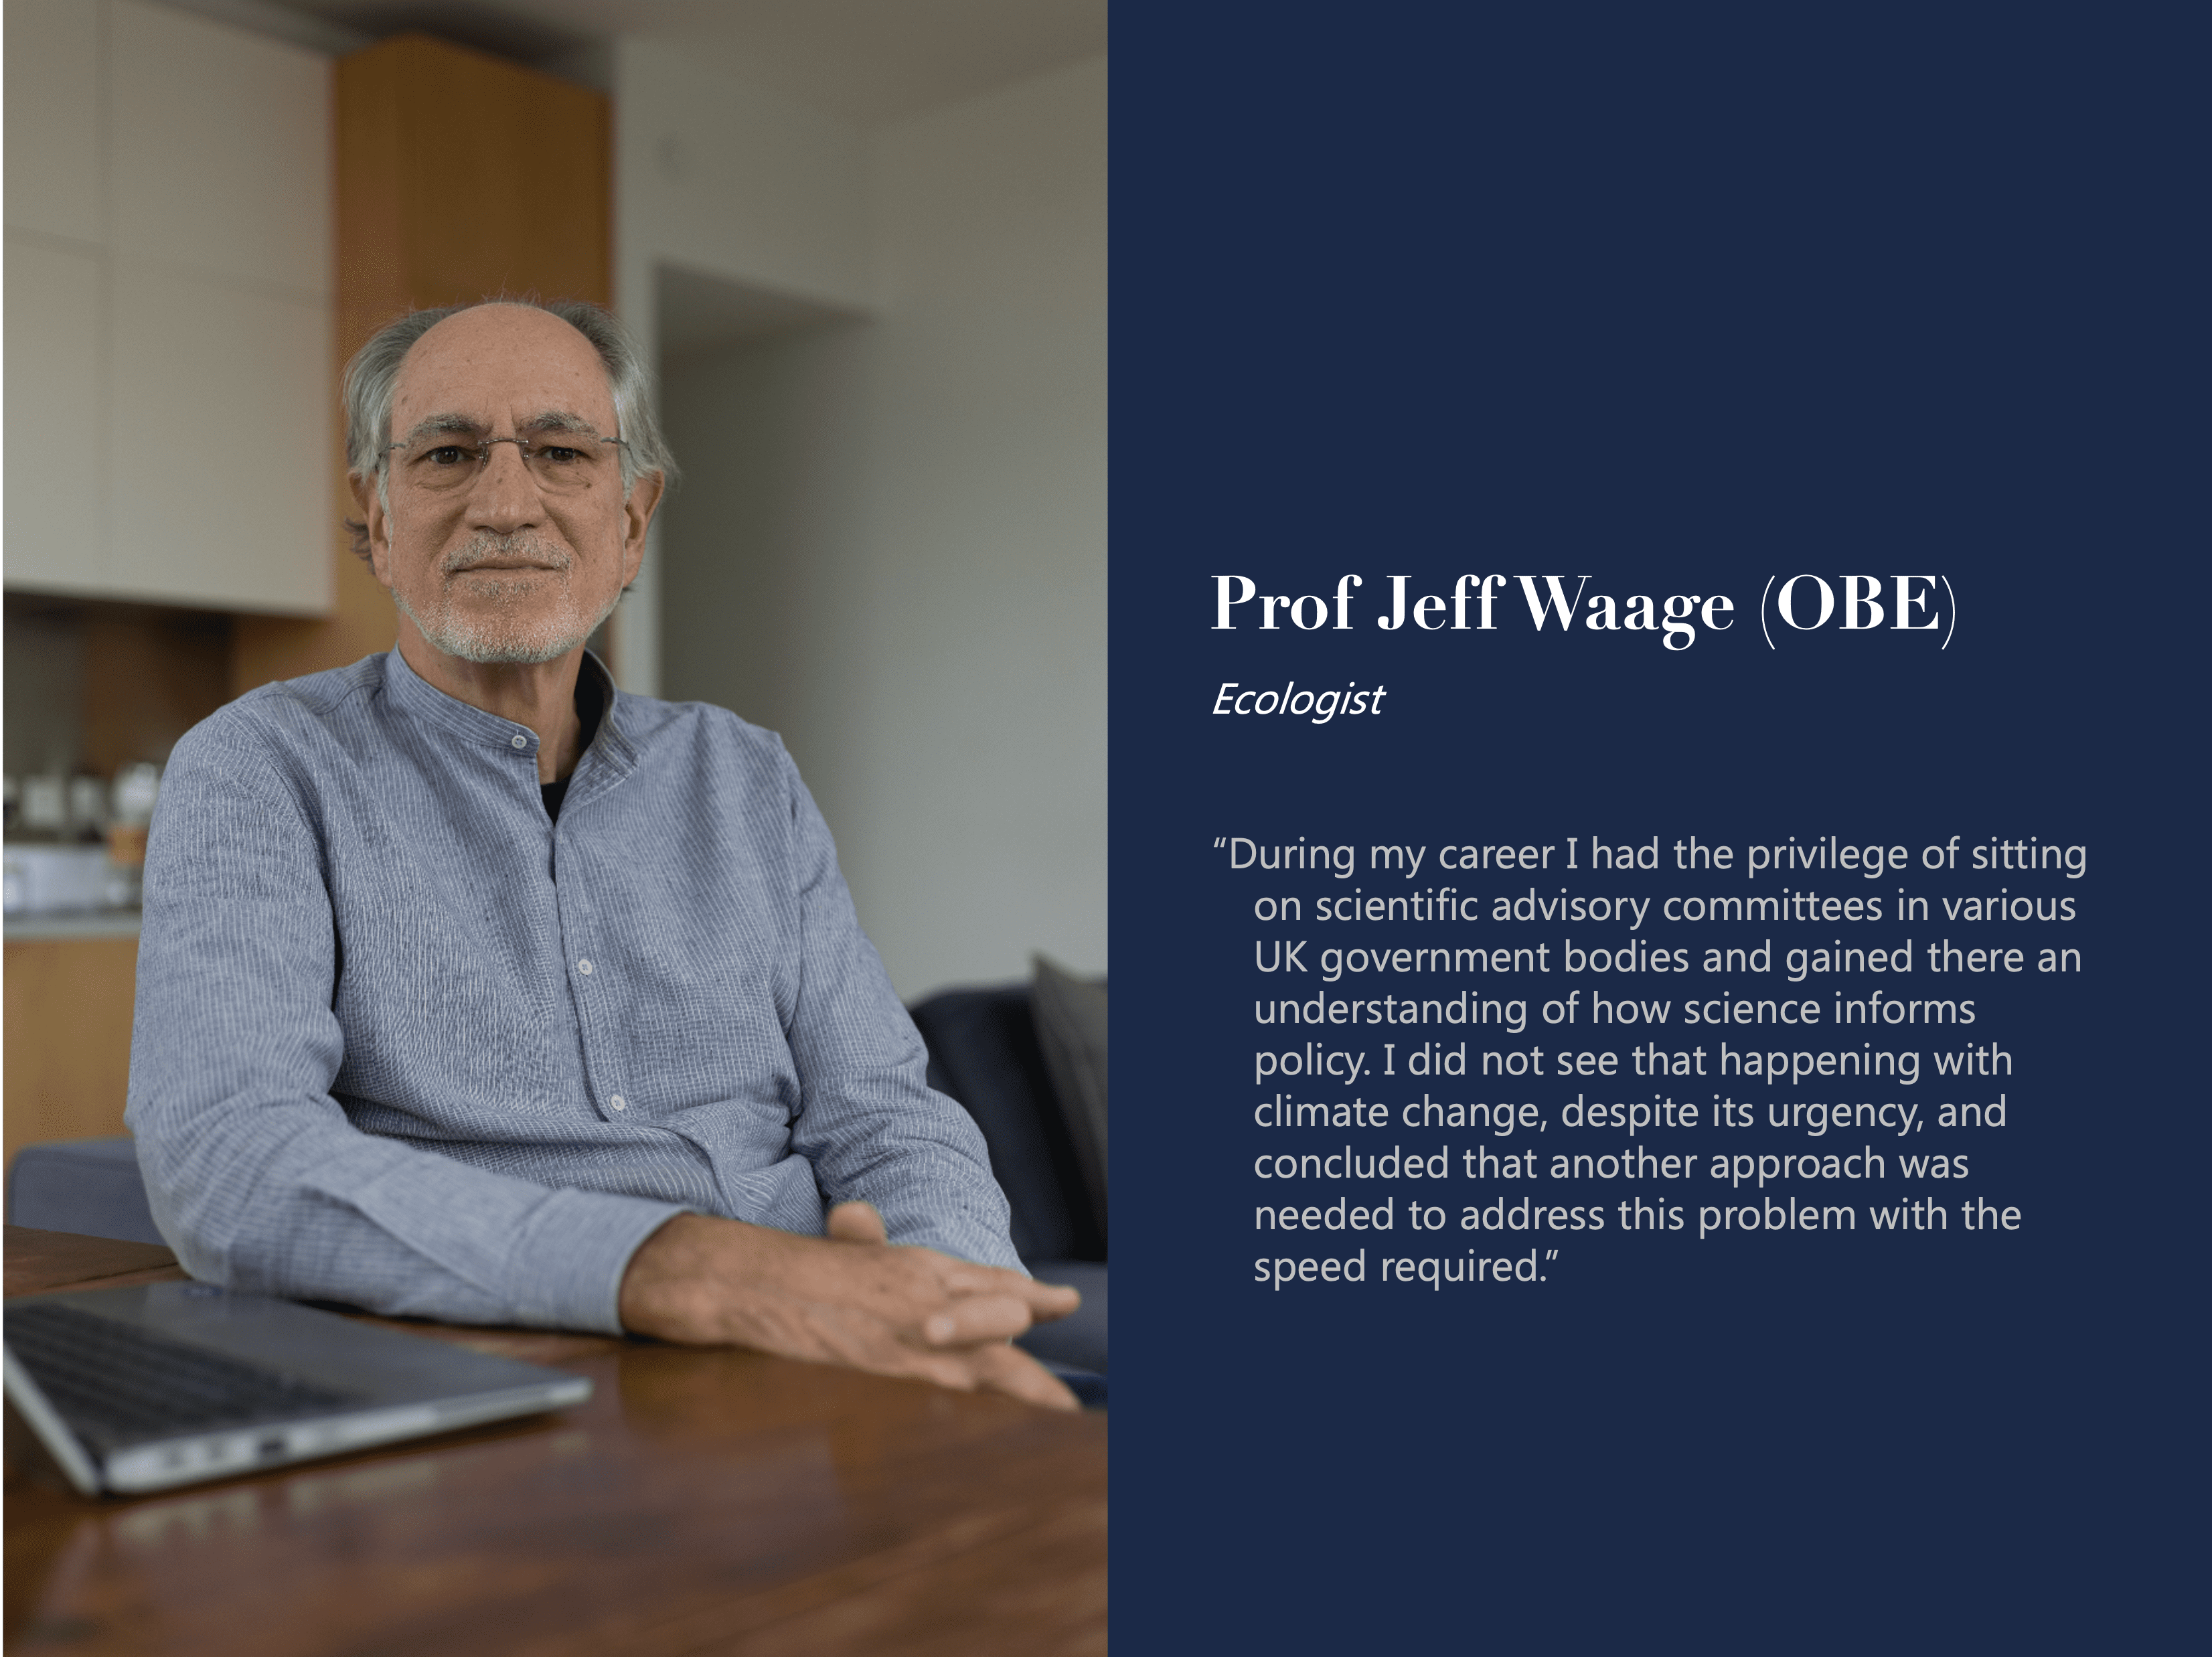 Prof Jeff Waage, OBE